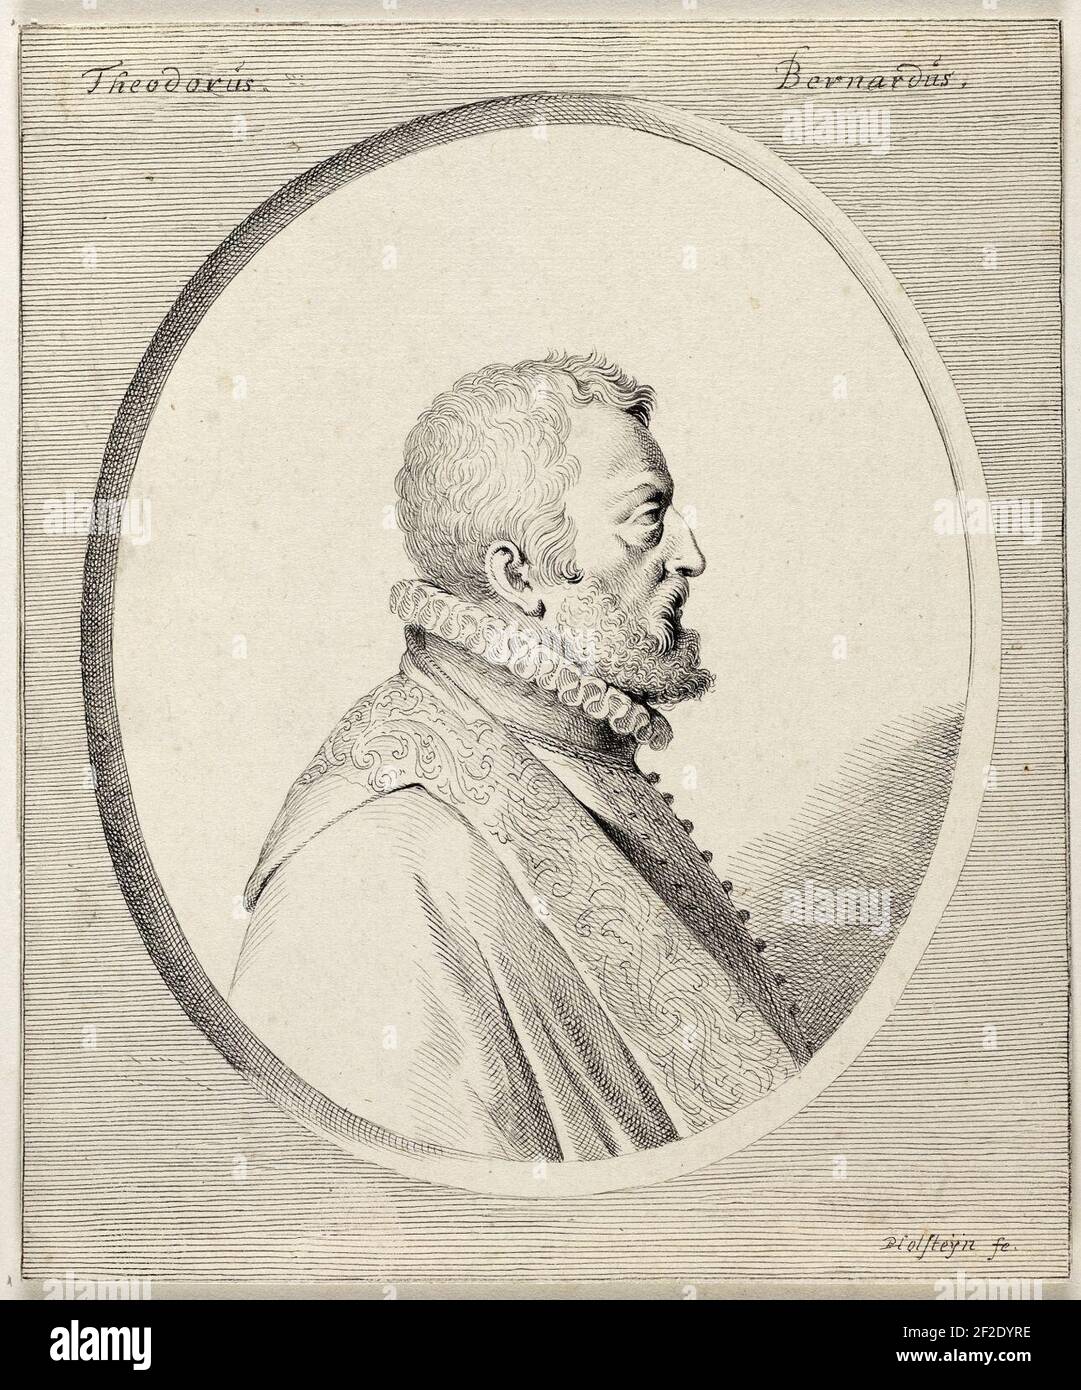 Portret van Theodorus Bernardus (Dirk Barends). Stock Photo